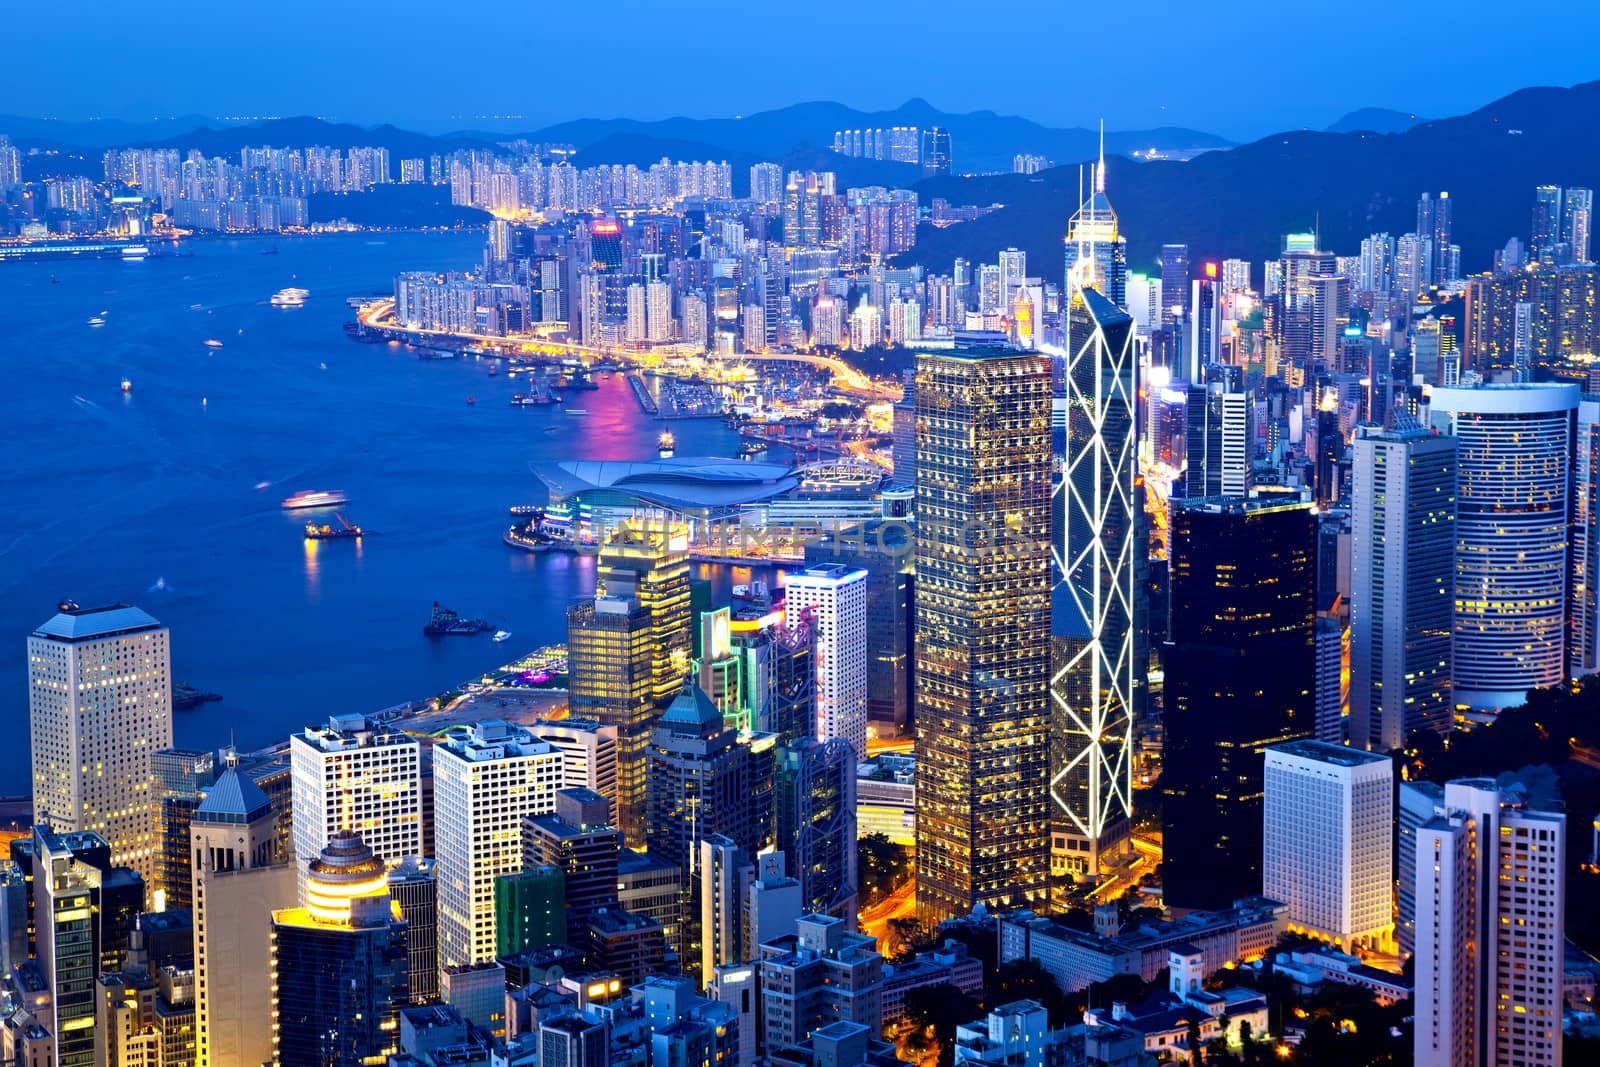 Hong Kong city night view at peak